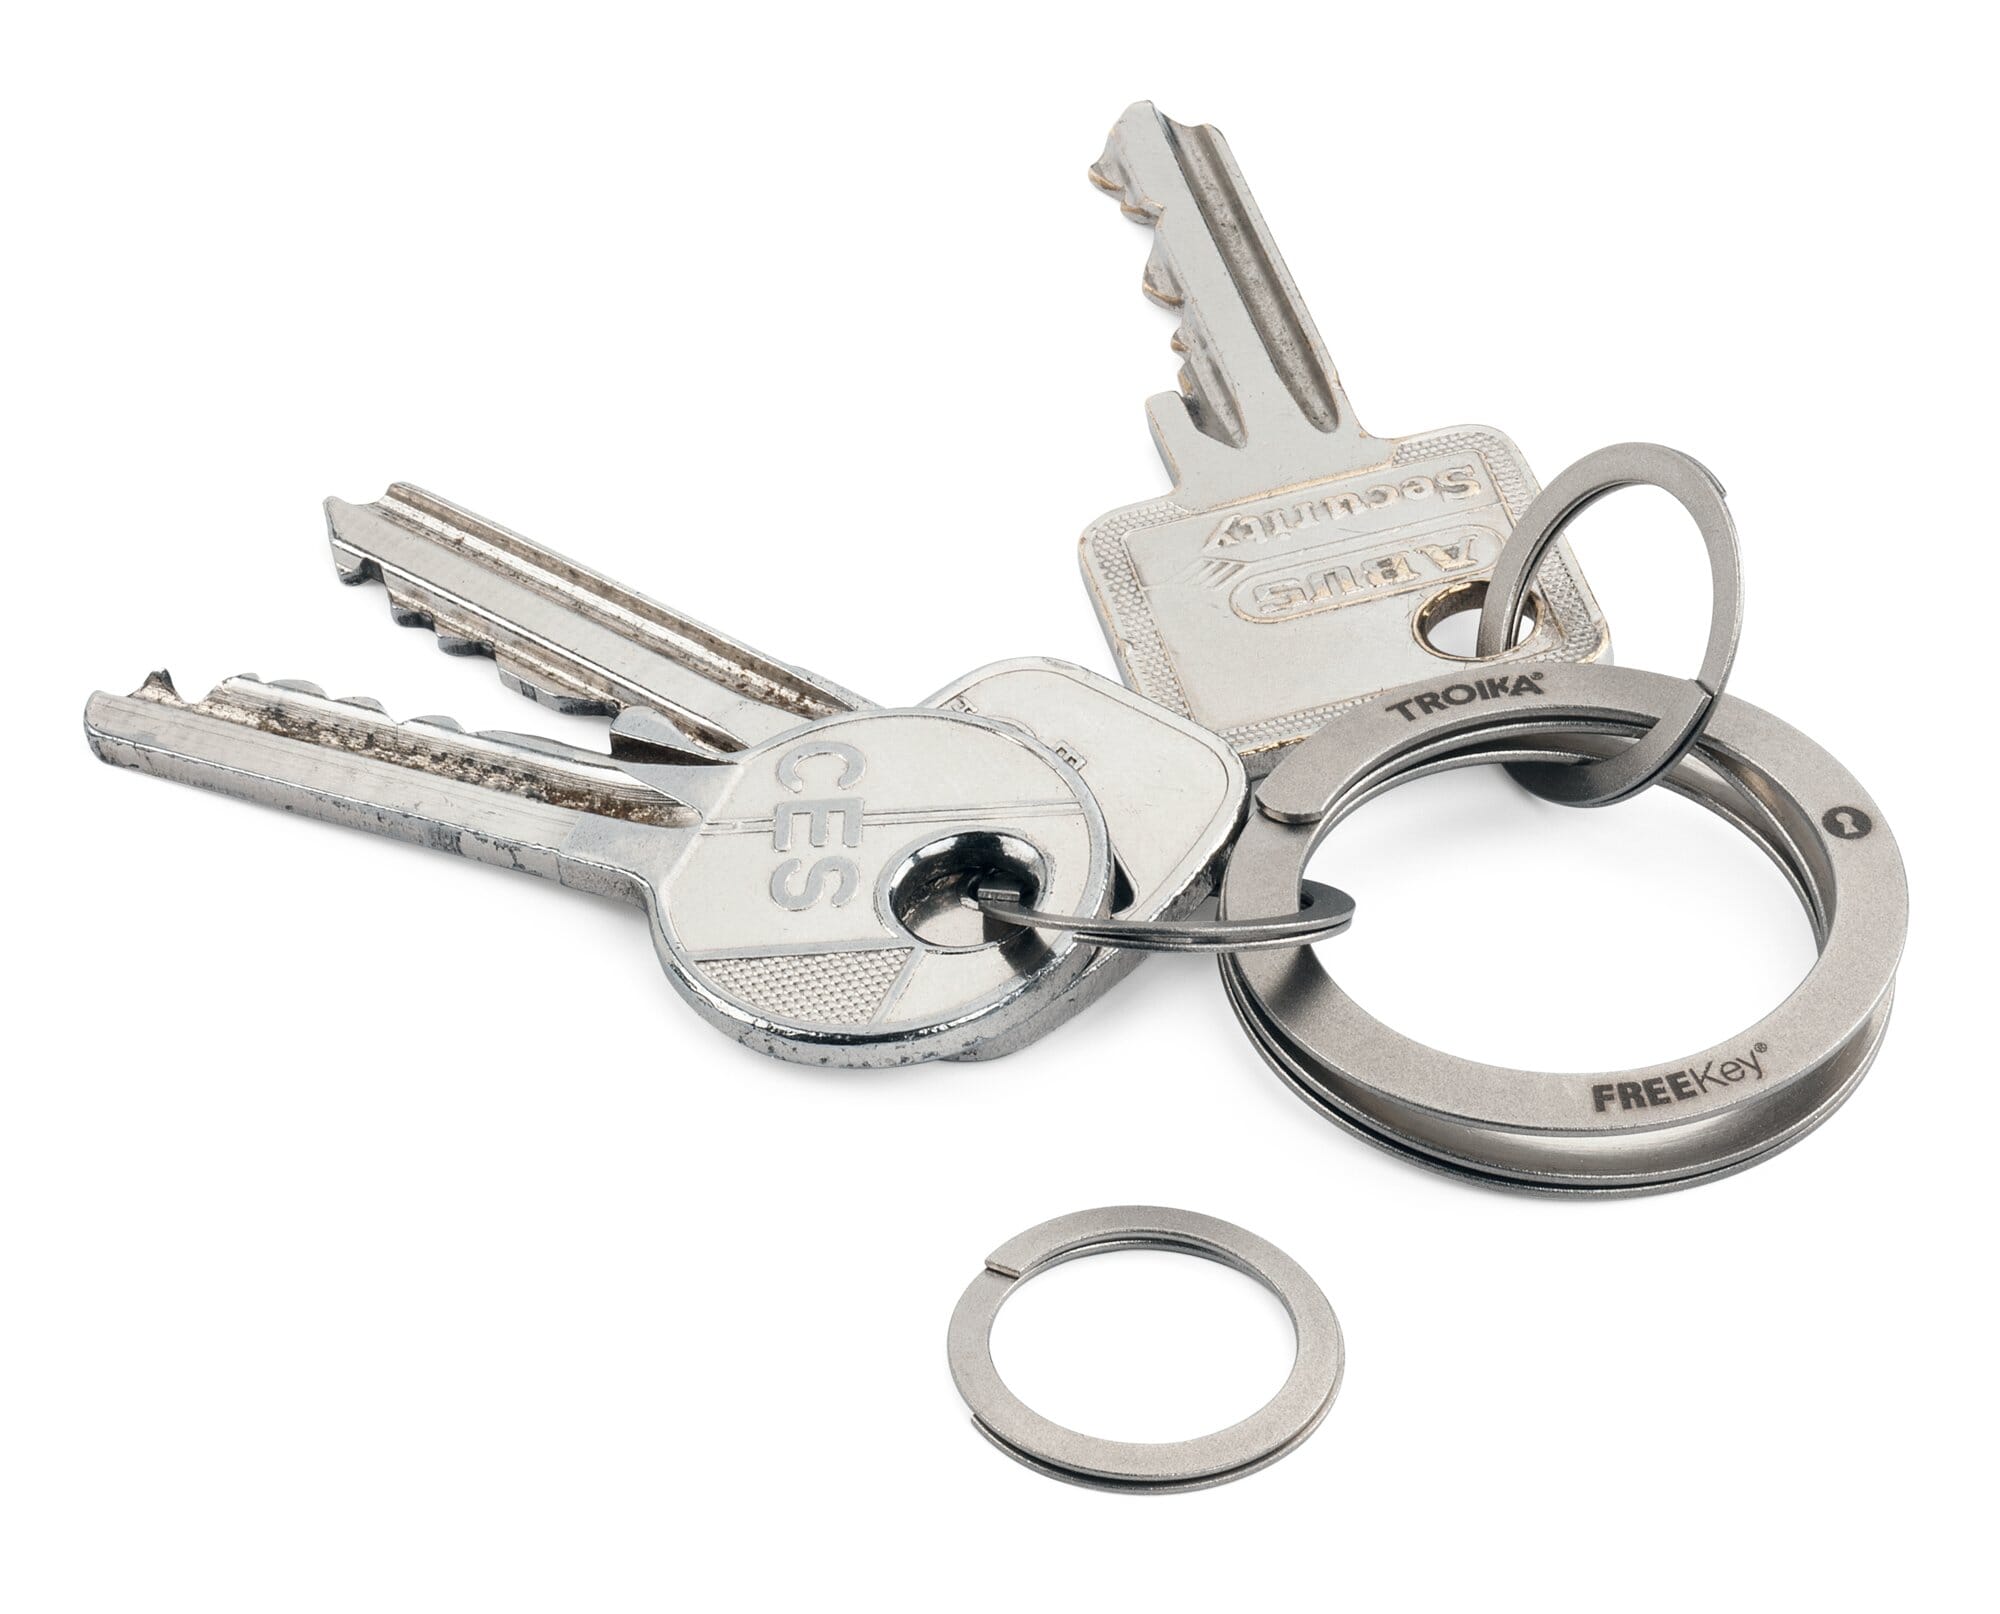 2023 neue süße Katze Schlüssel anhänger Mode Auto Zubehör Metall Schlüssel  anhänger kreative Geschenke schöne Schlüssel bund Schlüssel ring Schmuck  für z1709 - AliExpress